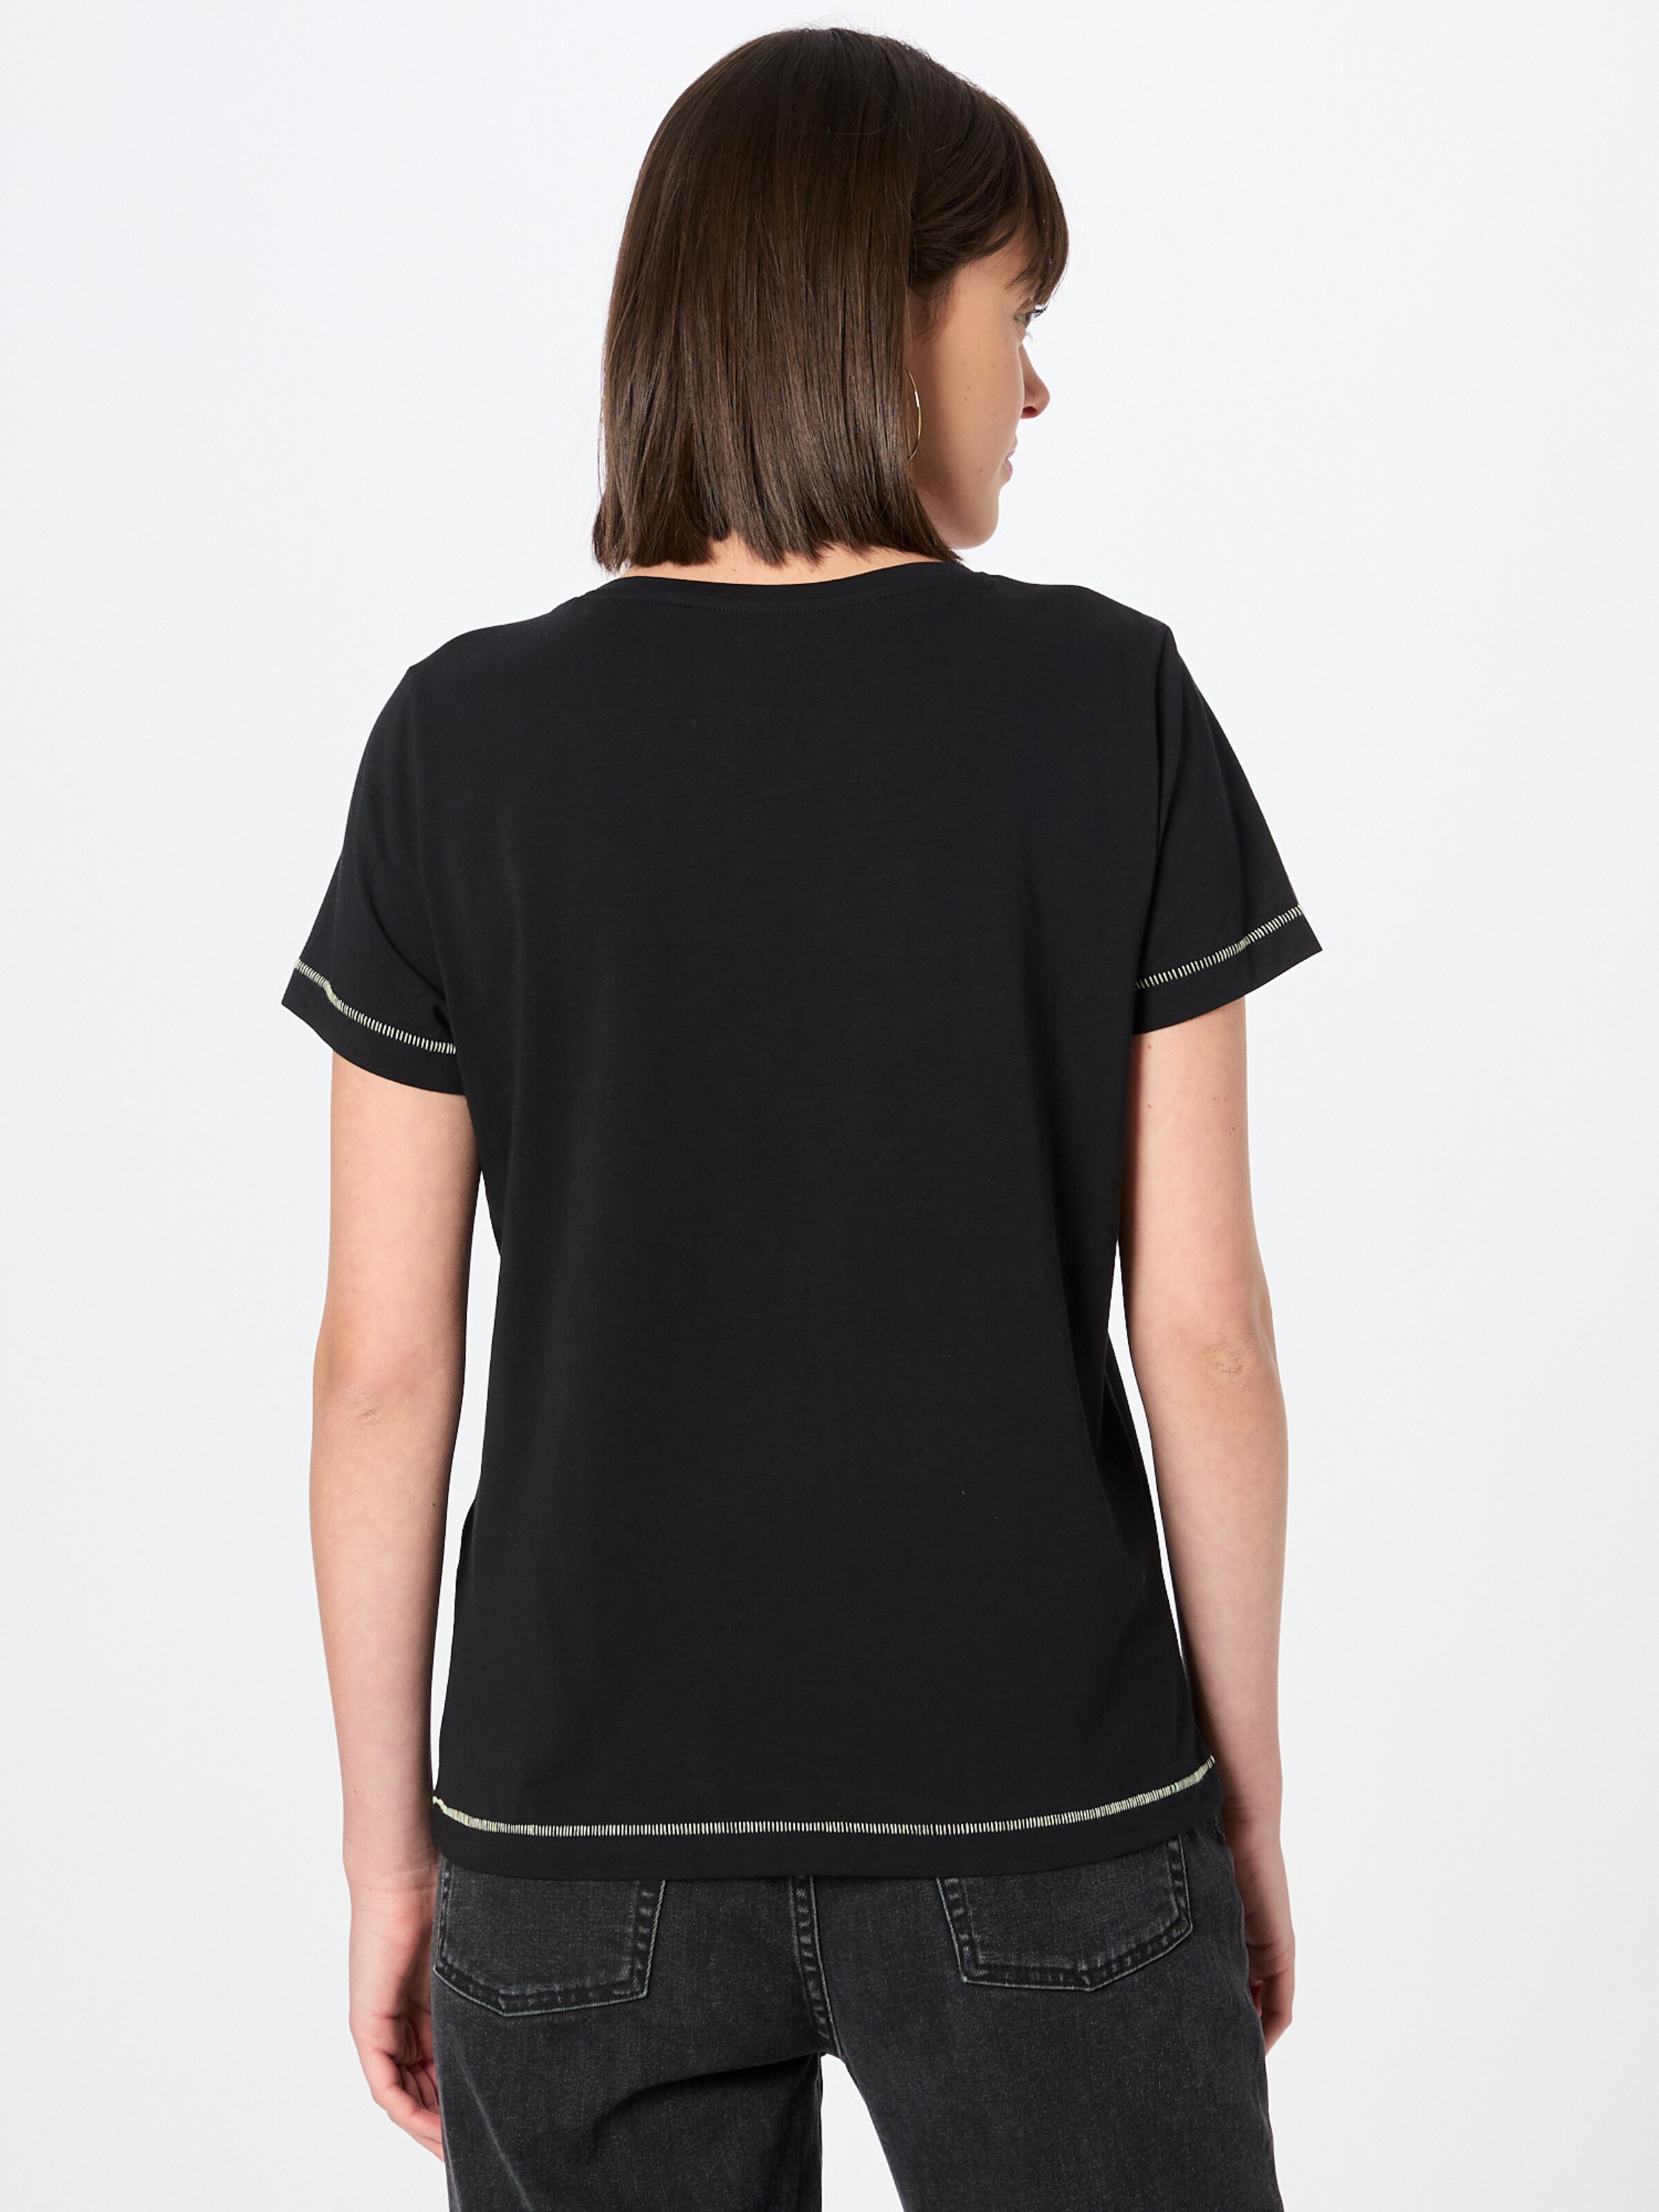 Frauen Shirts & Tops TAIFUN T-Shirt in Schwarz - EC92480